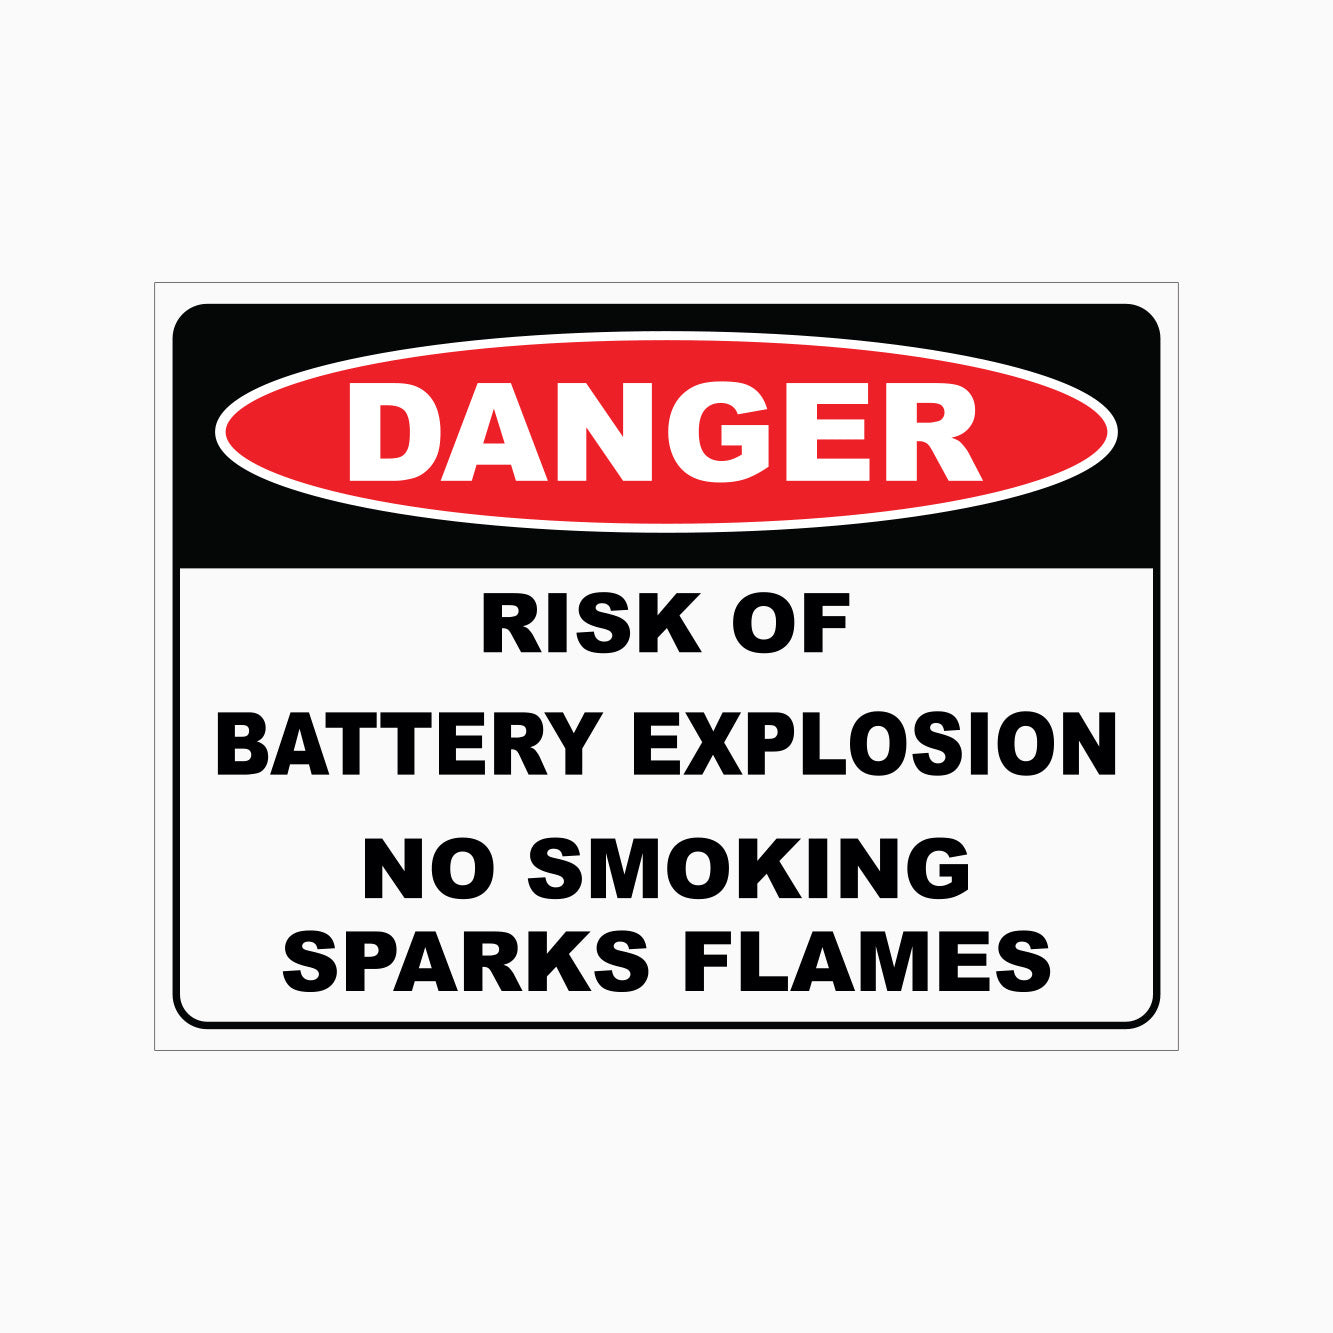 DANGER RISK OF BATTER EXPLOSION NO SMOKING SPARKS FLAMES SIGN